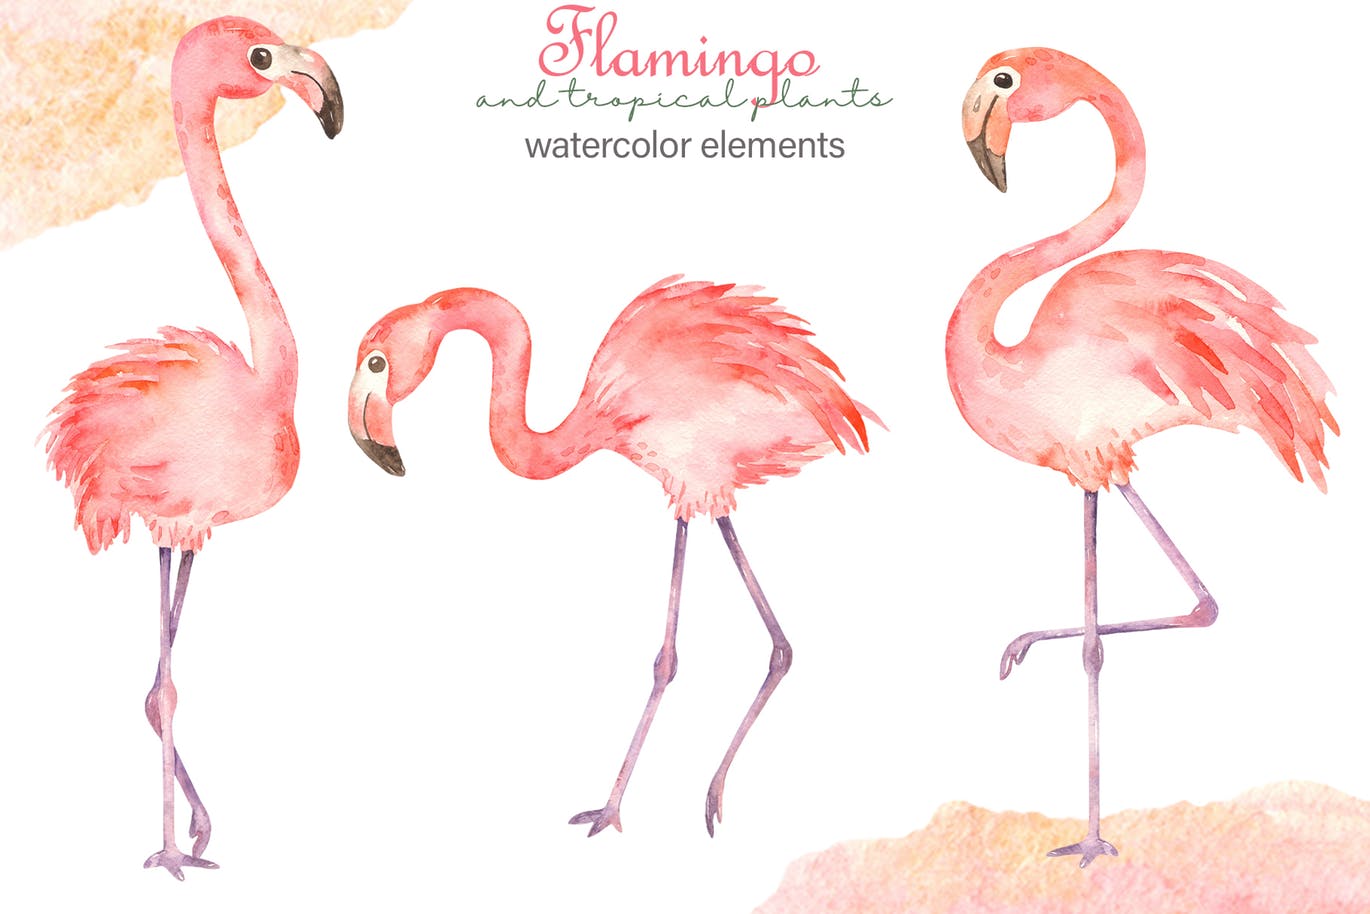 火烈鸟＆热带植物水彩插画素材 Watercolor flamingos and tropical plants插图(1)